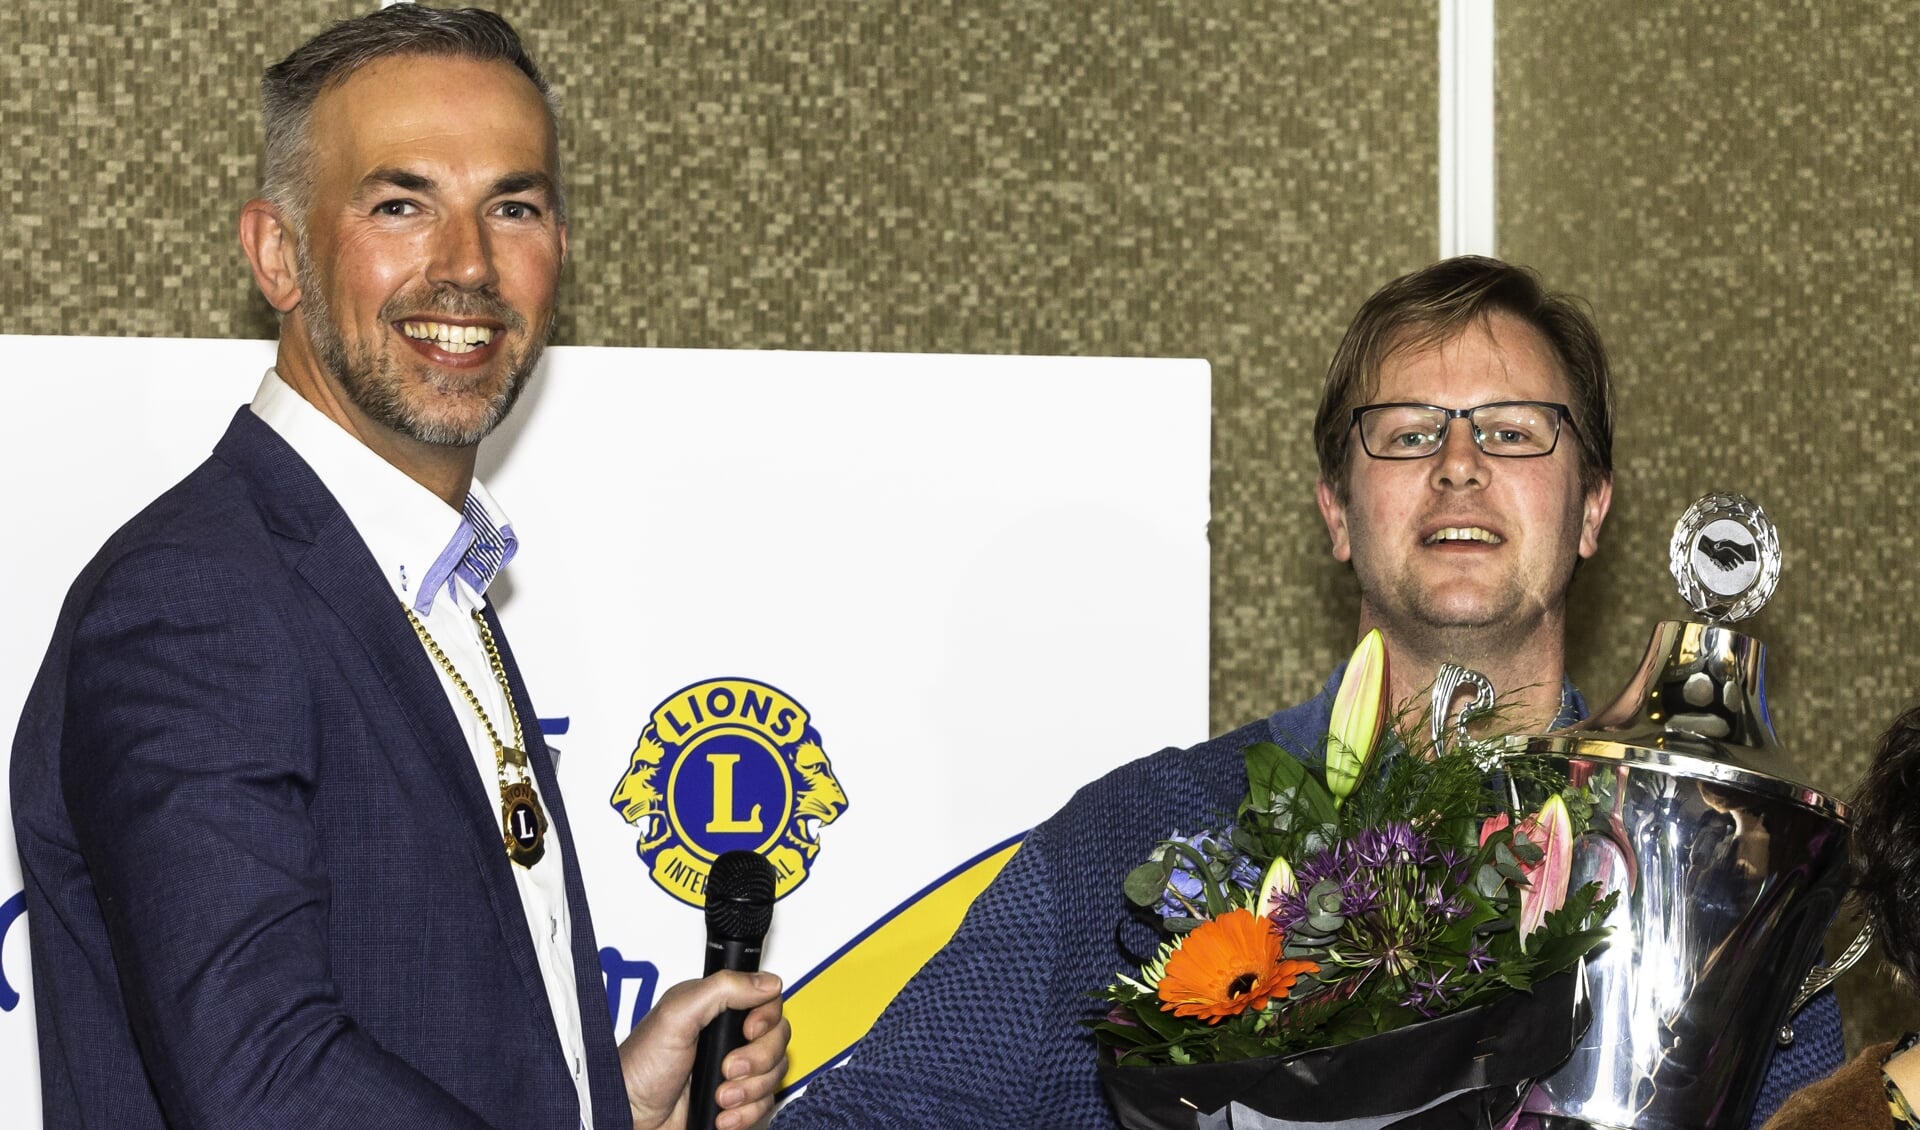 Voorzitter Alex Omtzigt feliciteert Ronald van Ruiten met de winst van zijn team. | Foto: pr./Frans Eijck